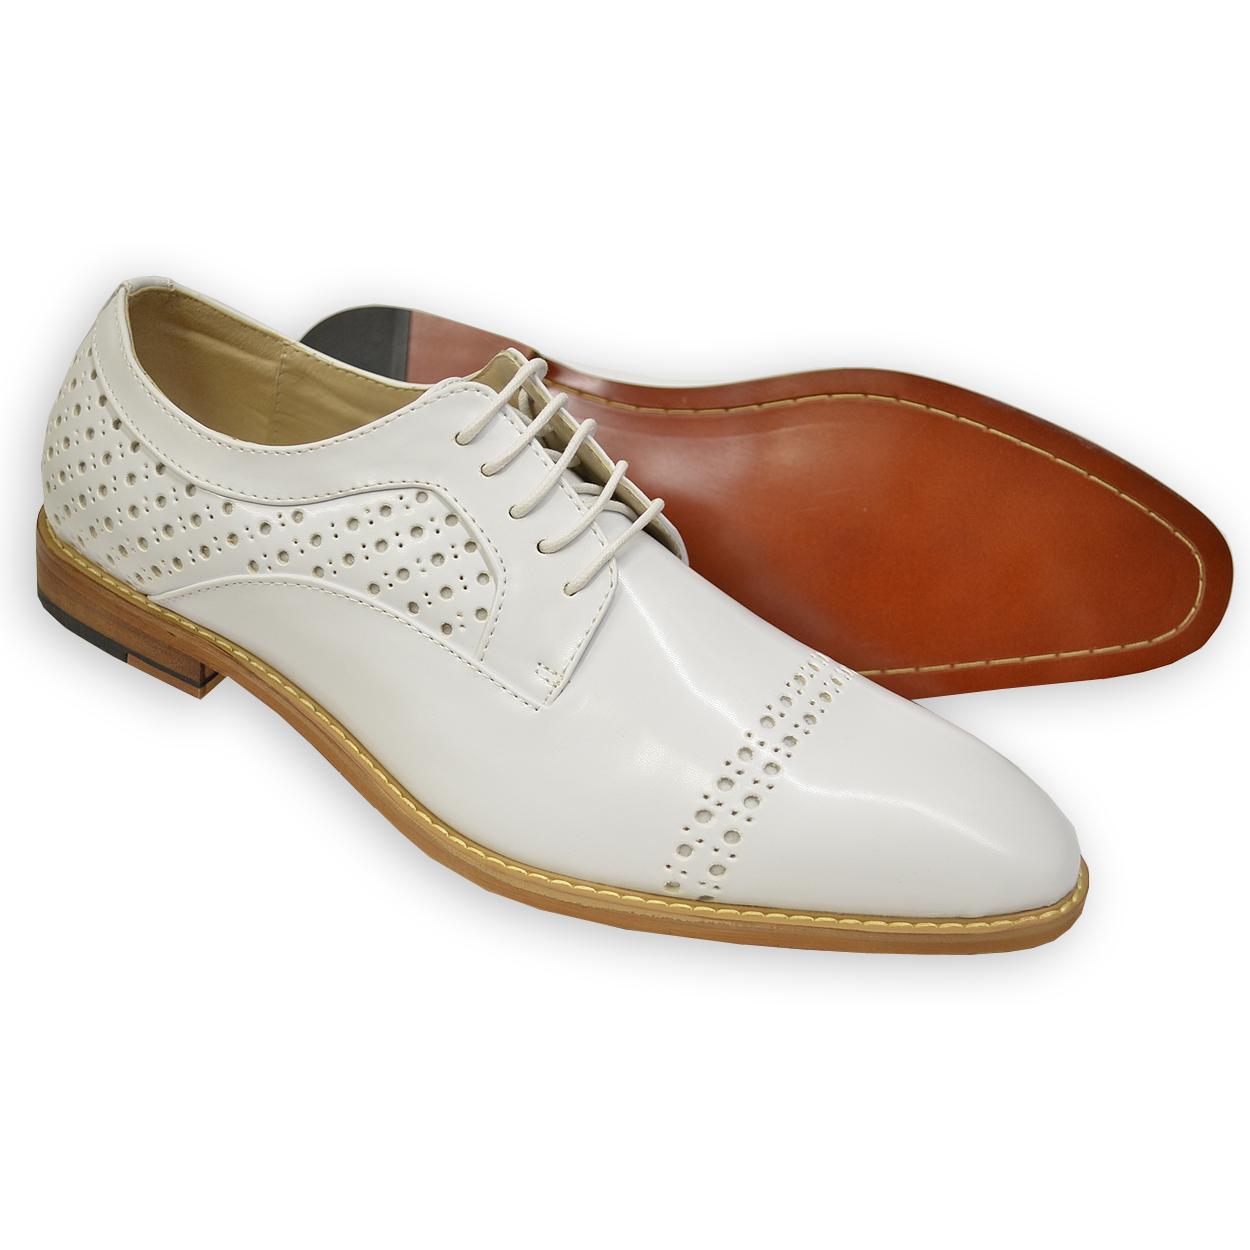 Antonio Cerrelli Men's White Cap Toe Derby Shoes | White Perforated ...